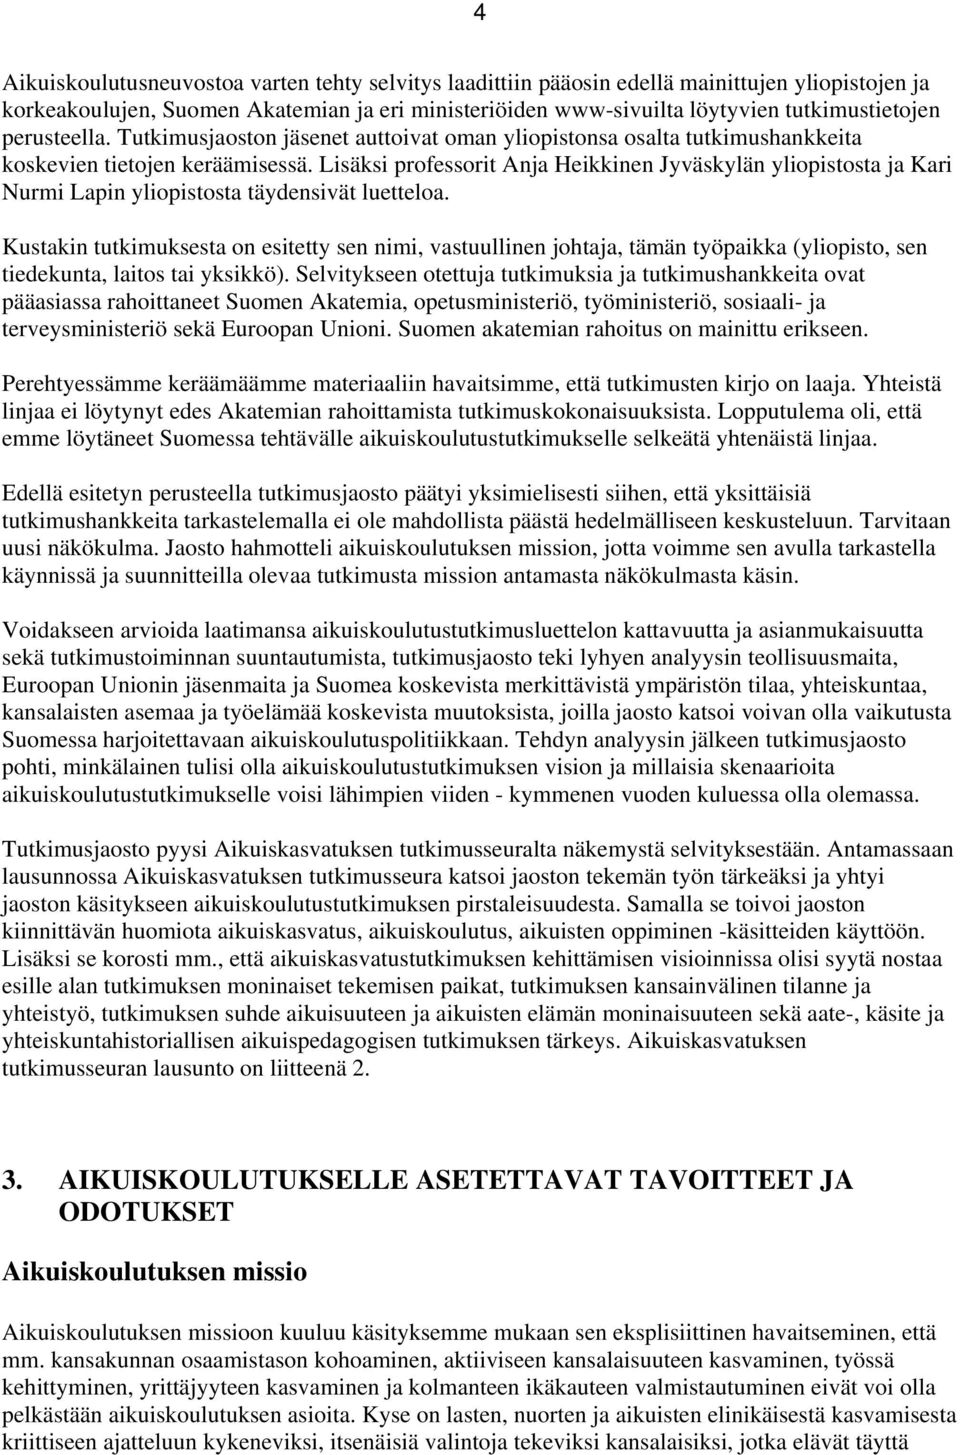 Lisäksi prfessrit Anja Heikkinen Jyväskylän ylipiststa ja Kari Nurmi Lapin ylipiststa täydensivät luettela.